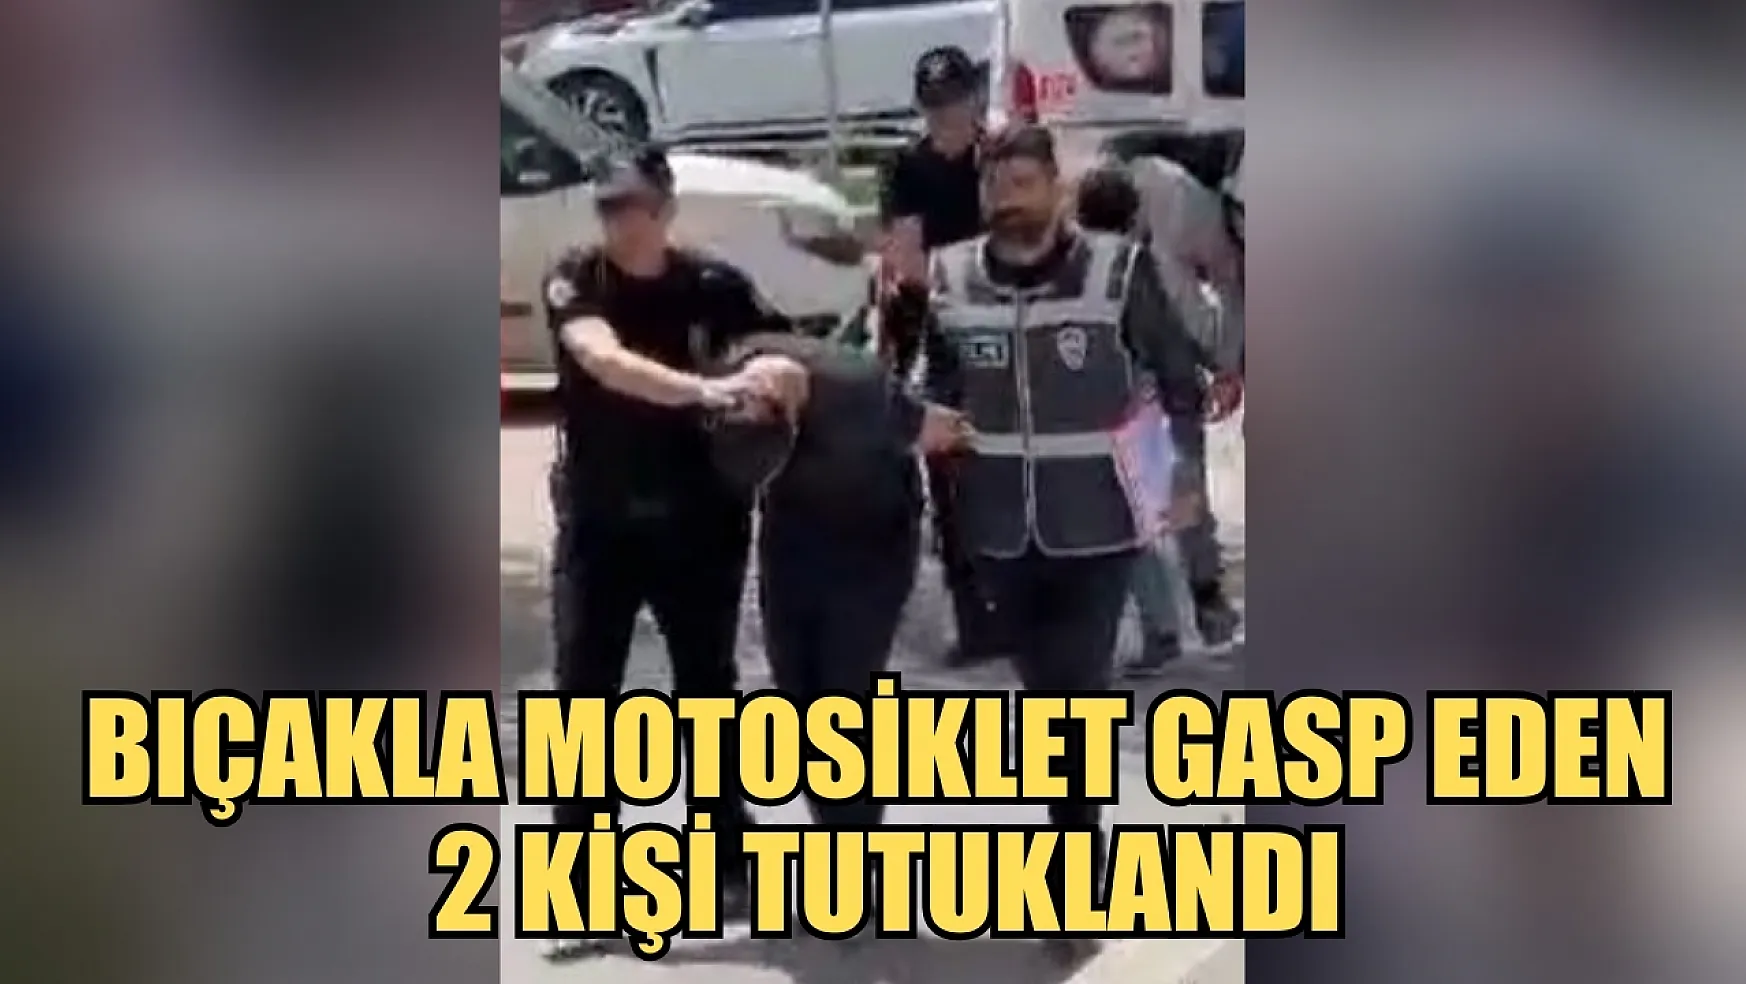 Bıçakla motosiklet gasp eden 2 kişi tutuklandı